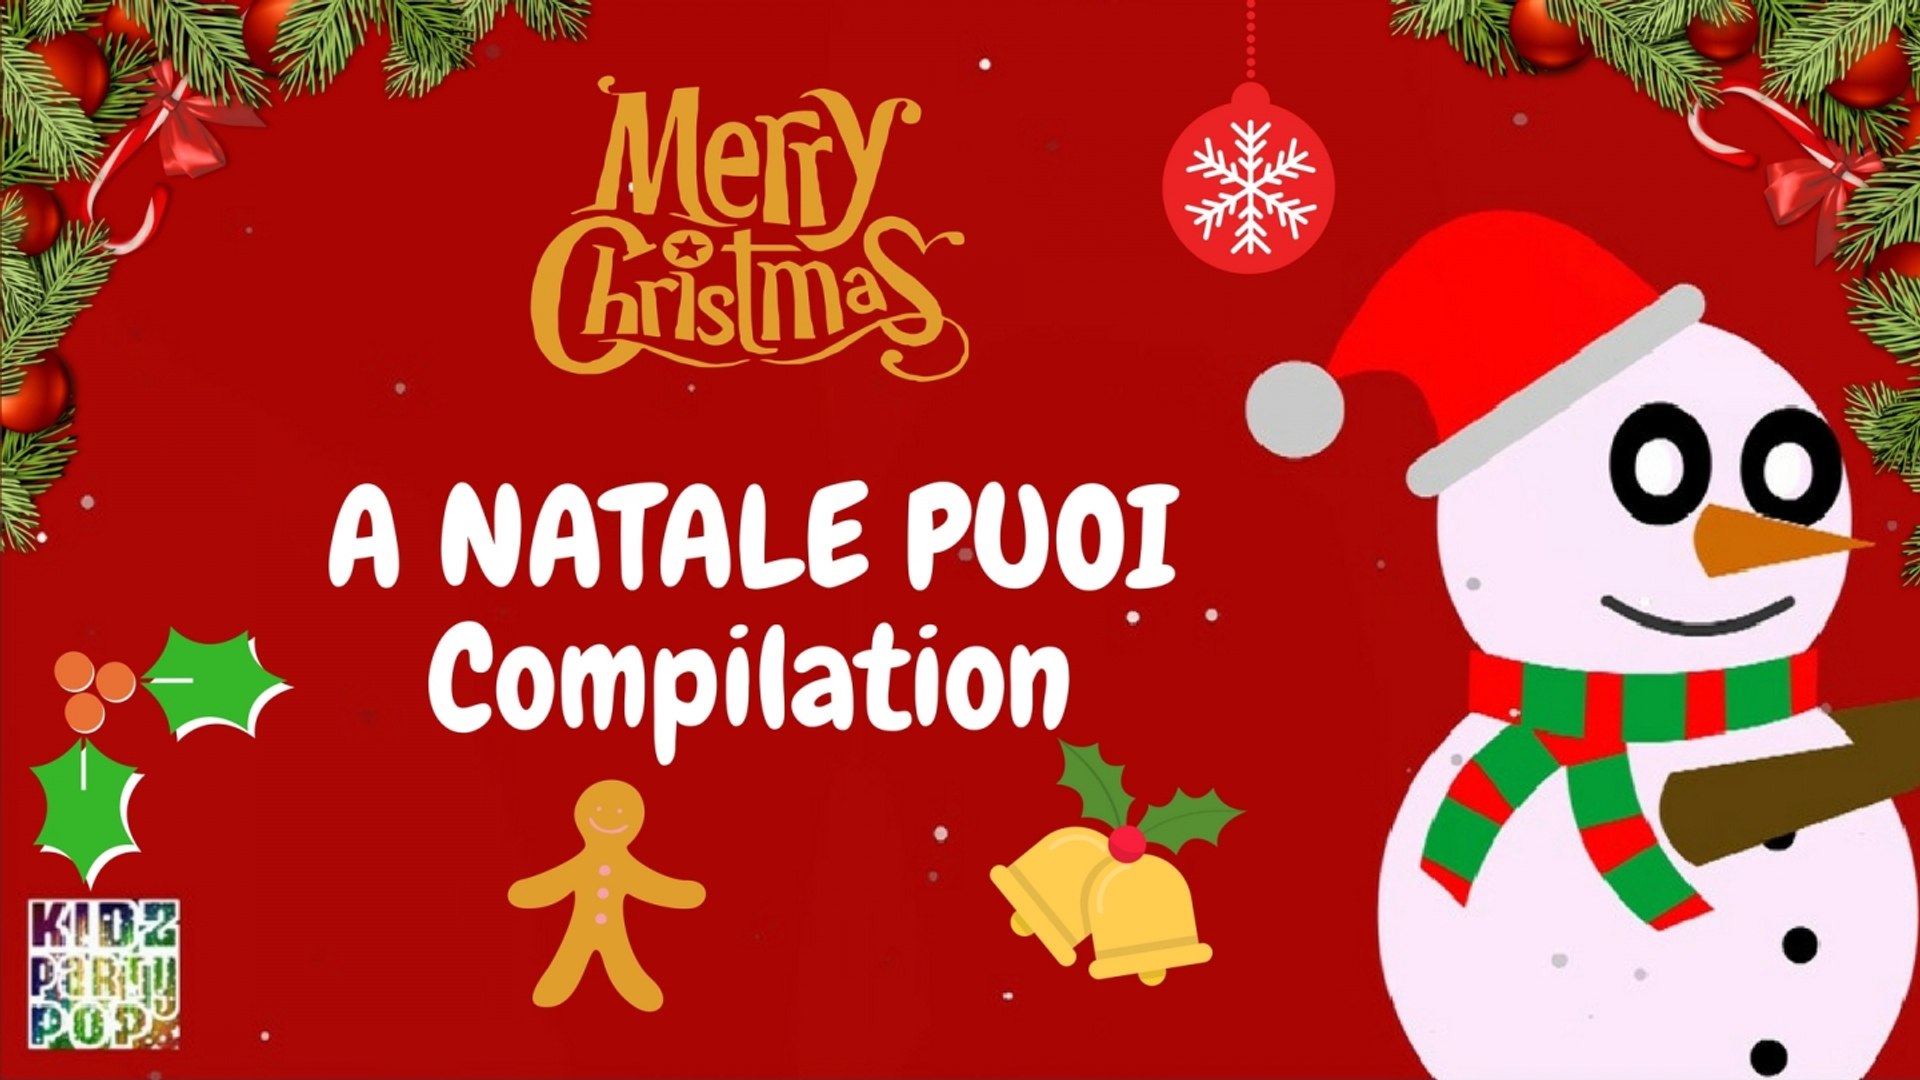 Anche Quest Anno E Gia Natale.Le Piu Belle Canzoni Di Natale A Natale Puoi Compilation Video Dailymotion